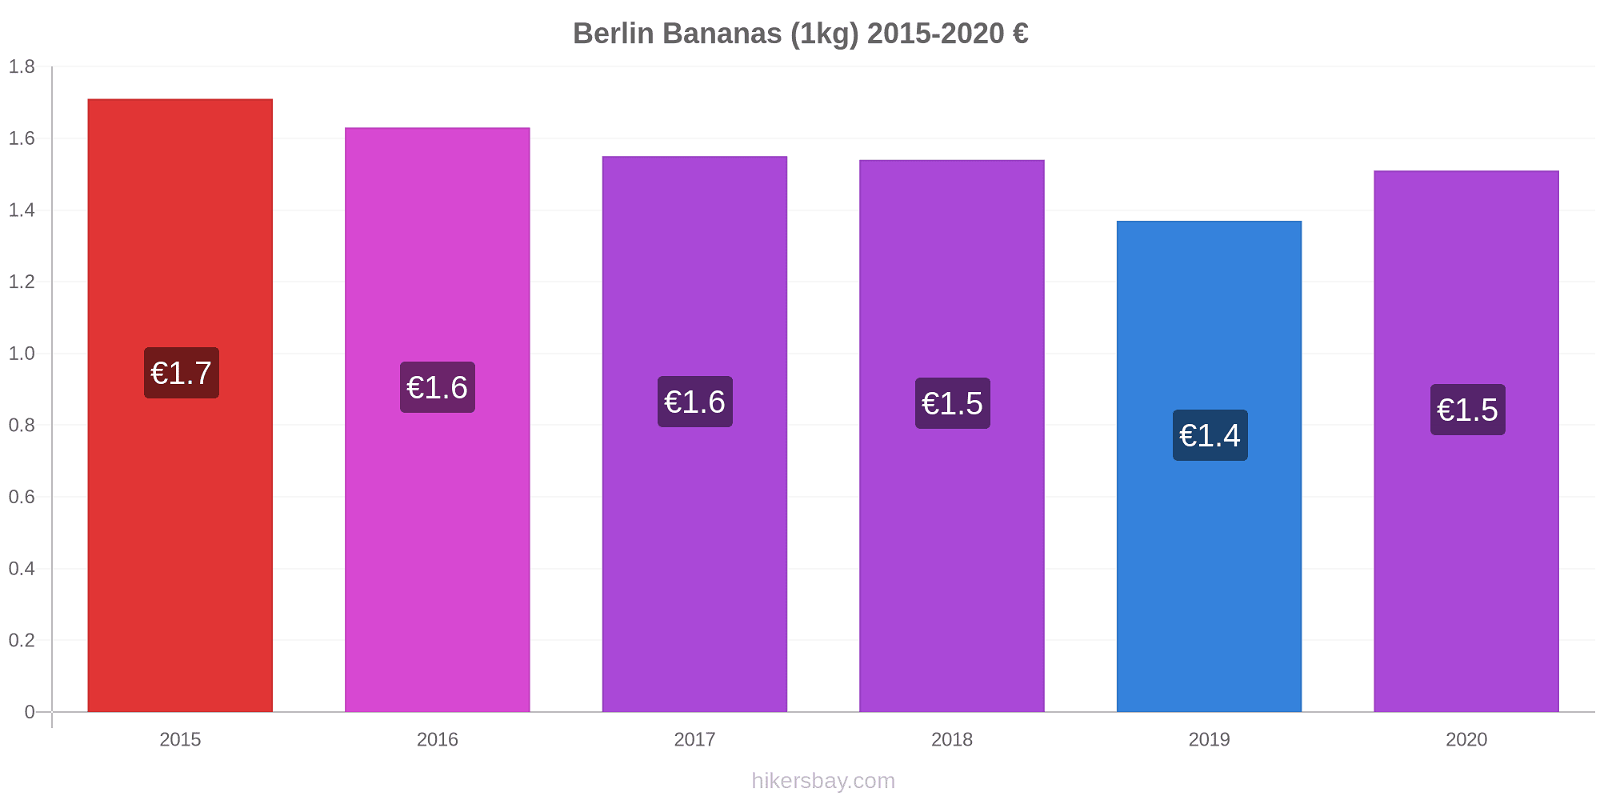 Berlin price changes Bananas (1kg) hikersbay.com